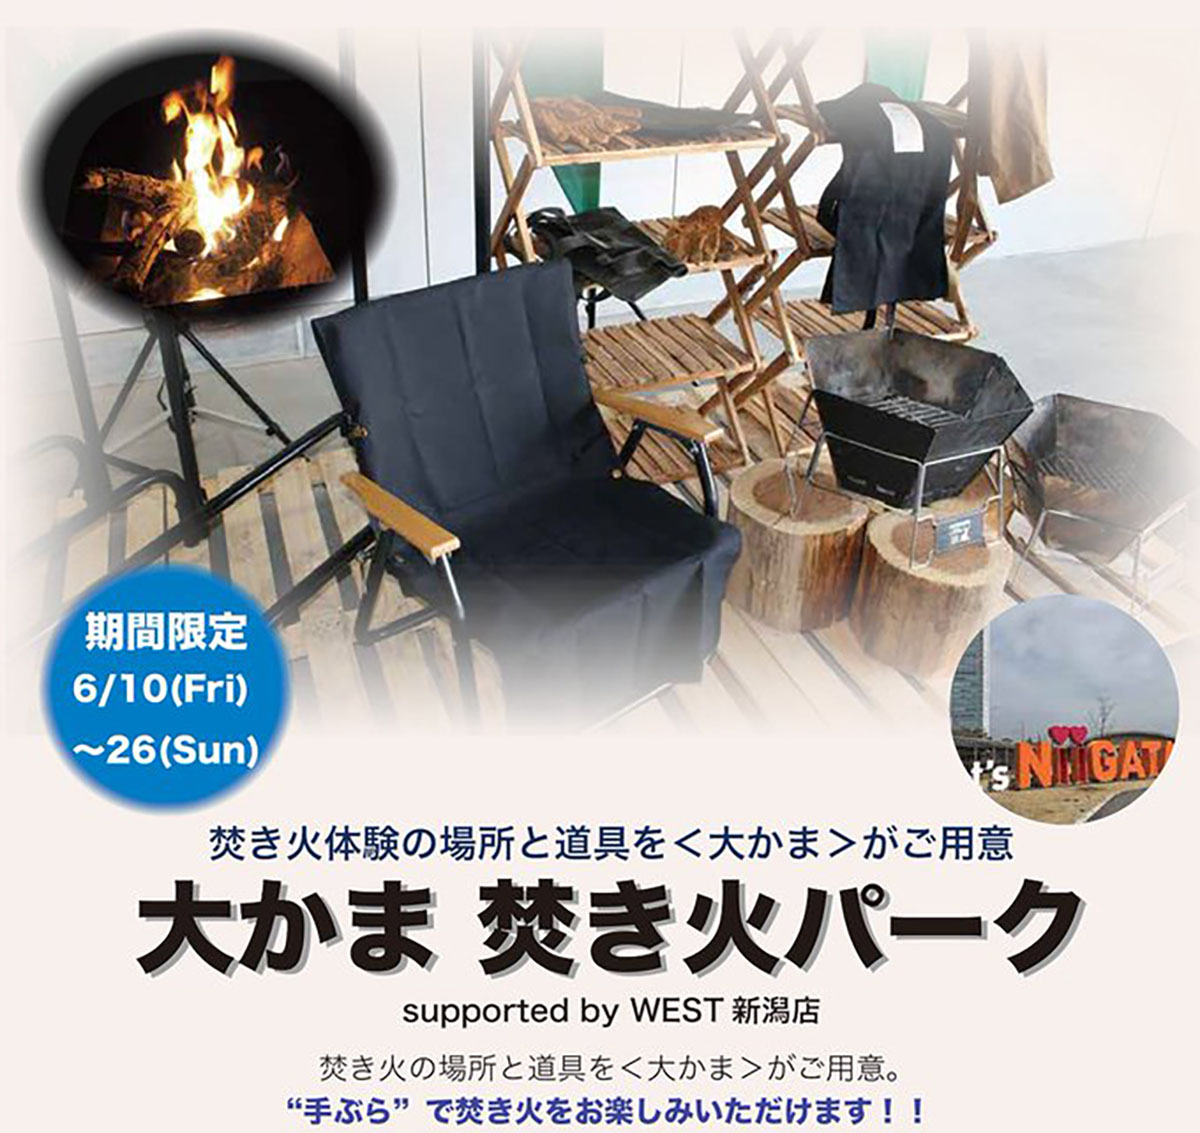 大かま焚き火パーク supported by WEST 新潟店開催のお知らせ